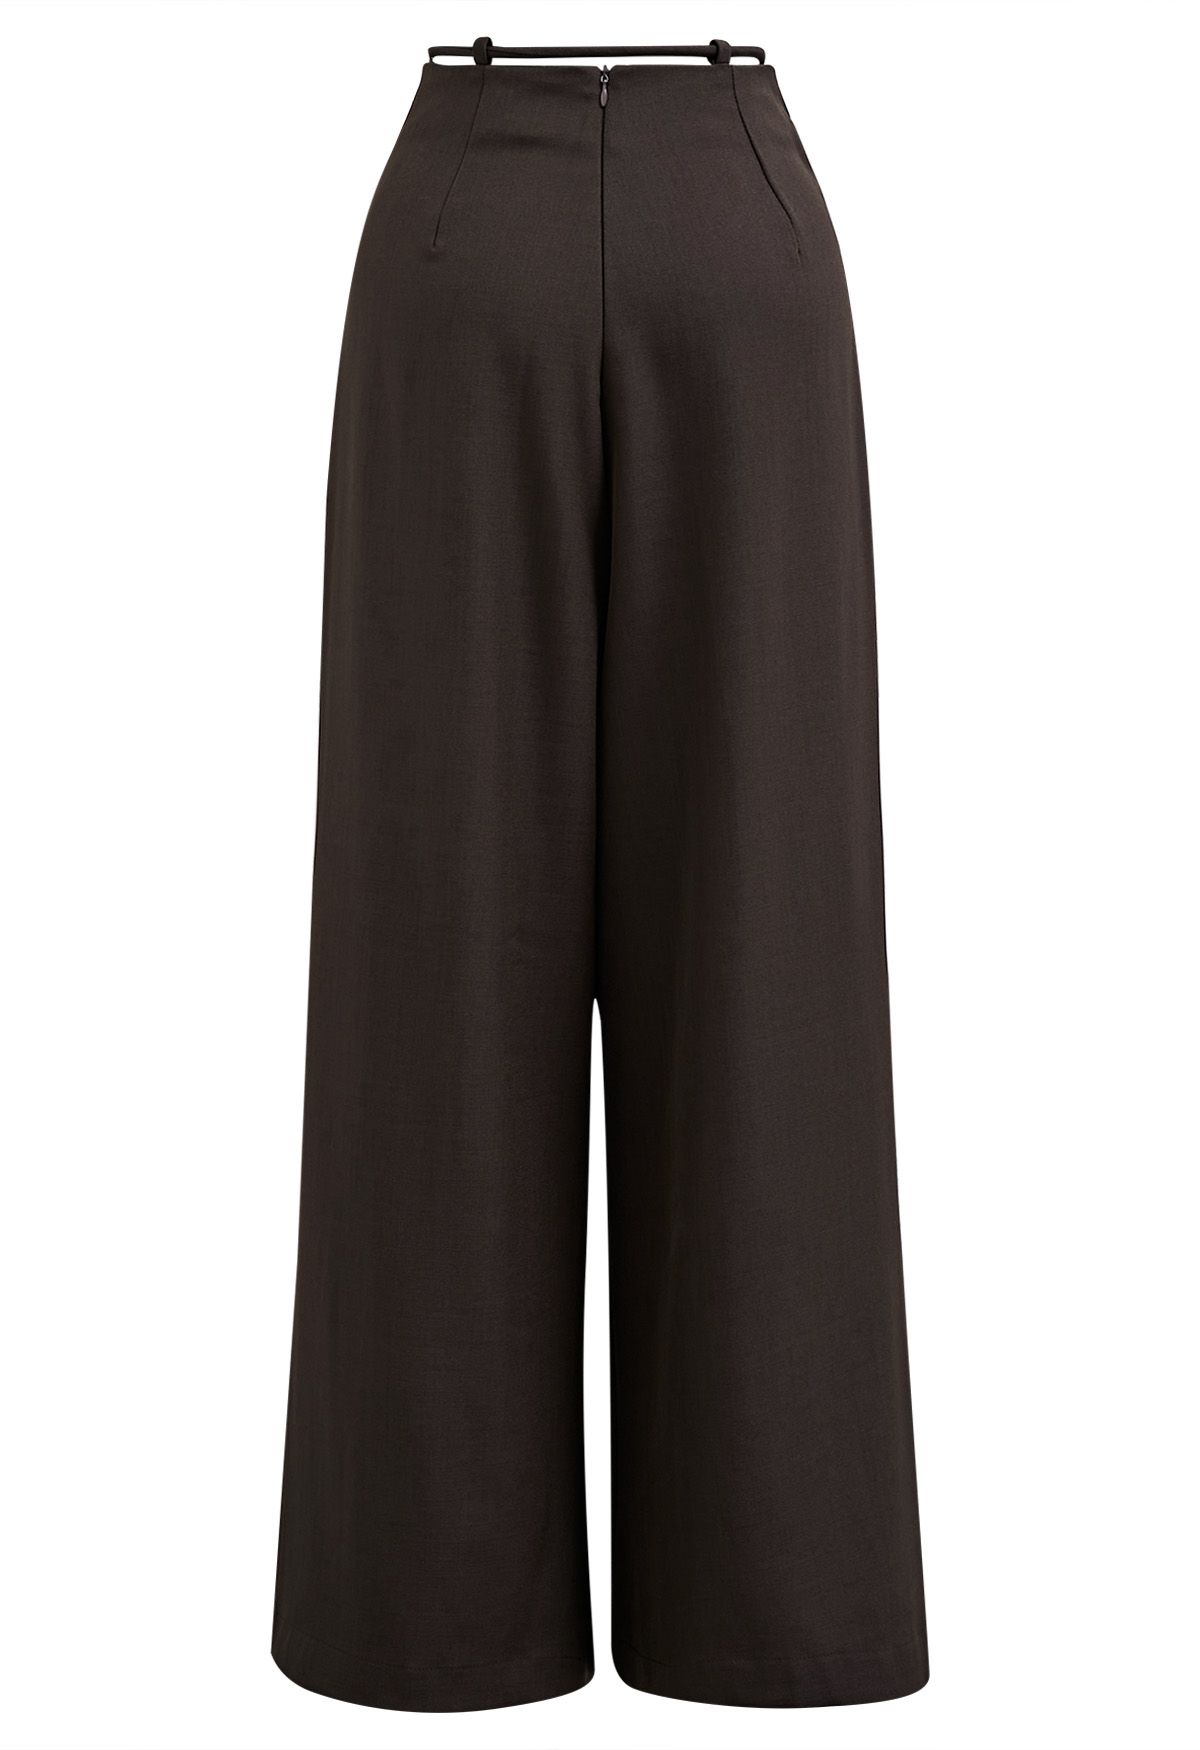 Trendy Tie-Waist Pleated Wide-Leg Pants in Brown